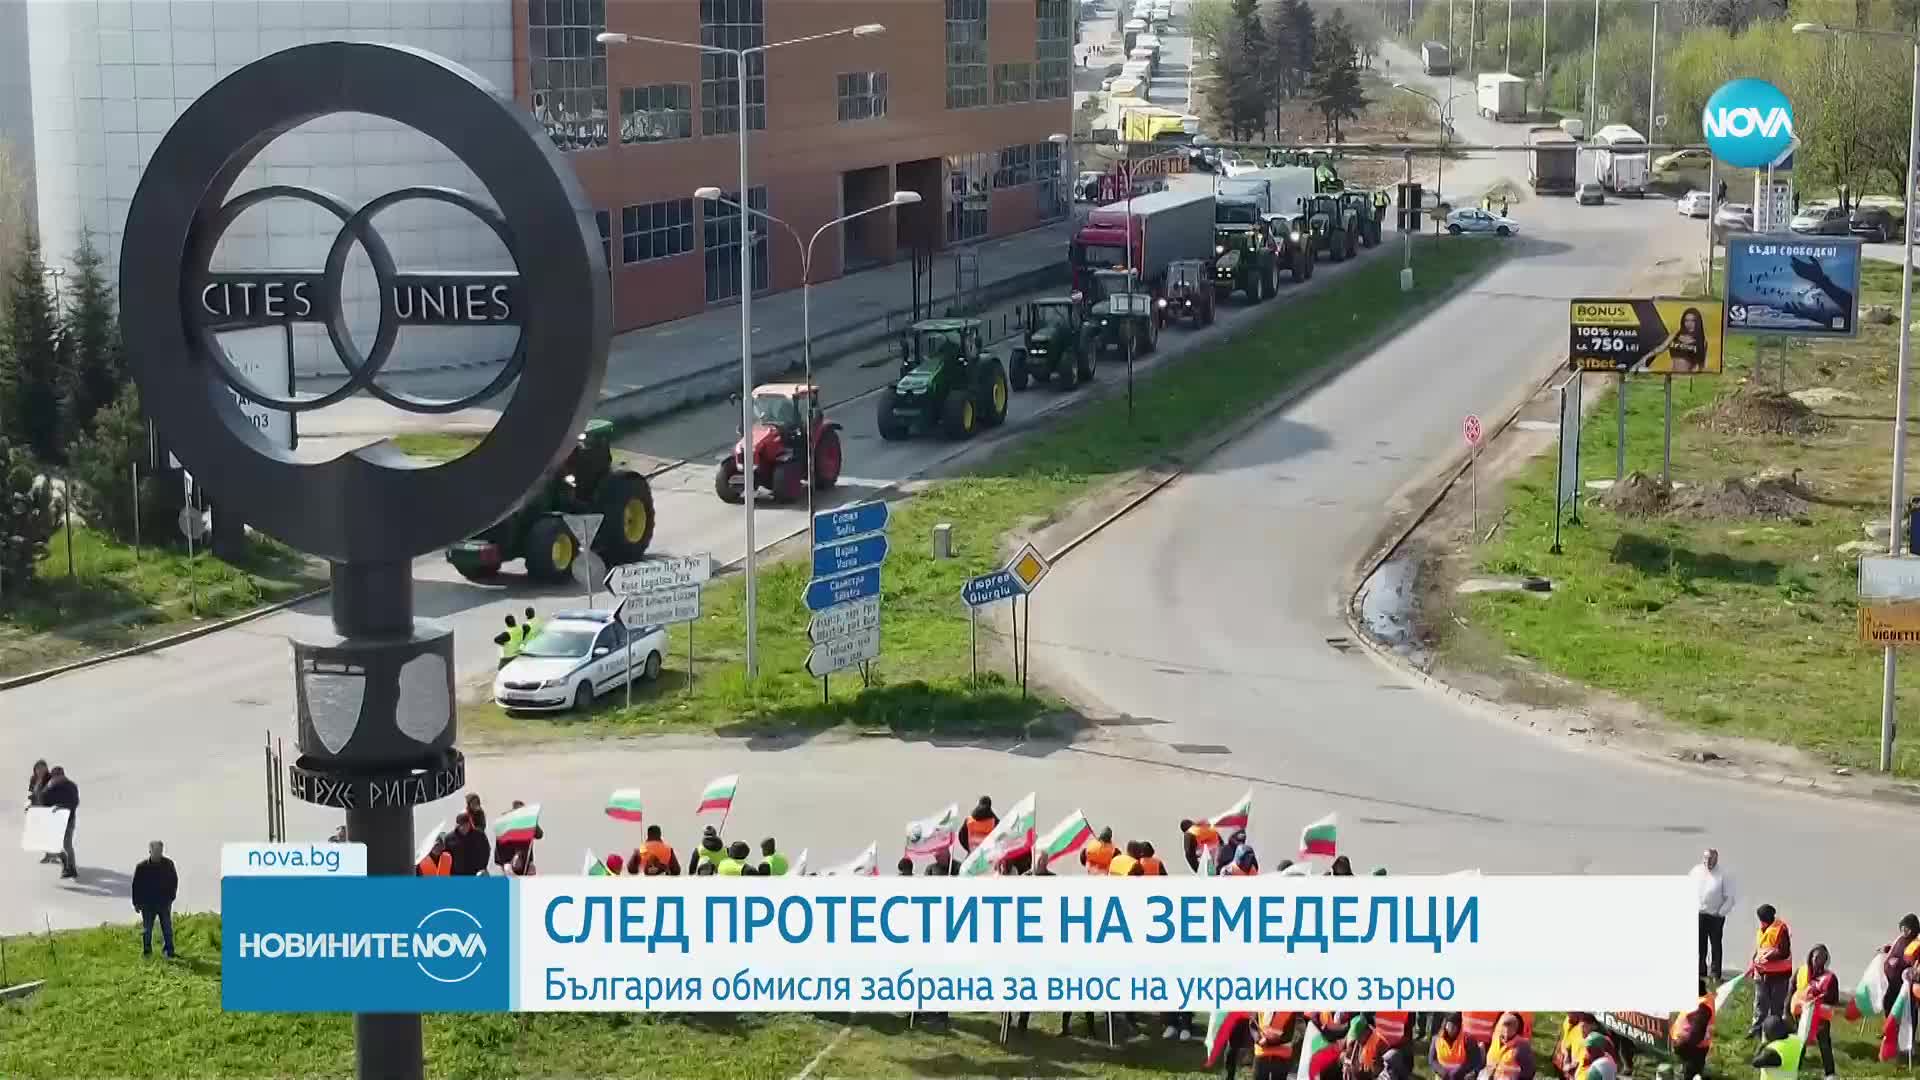 Явор Гечев: България обмисля забрана за внос на украинско зърно